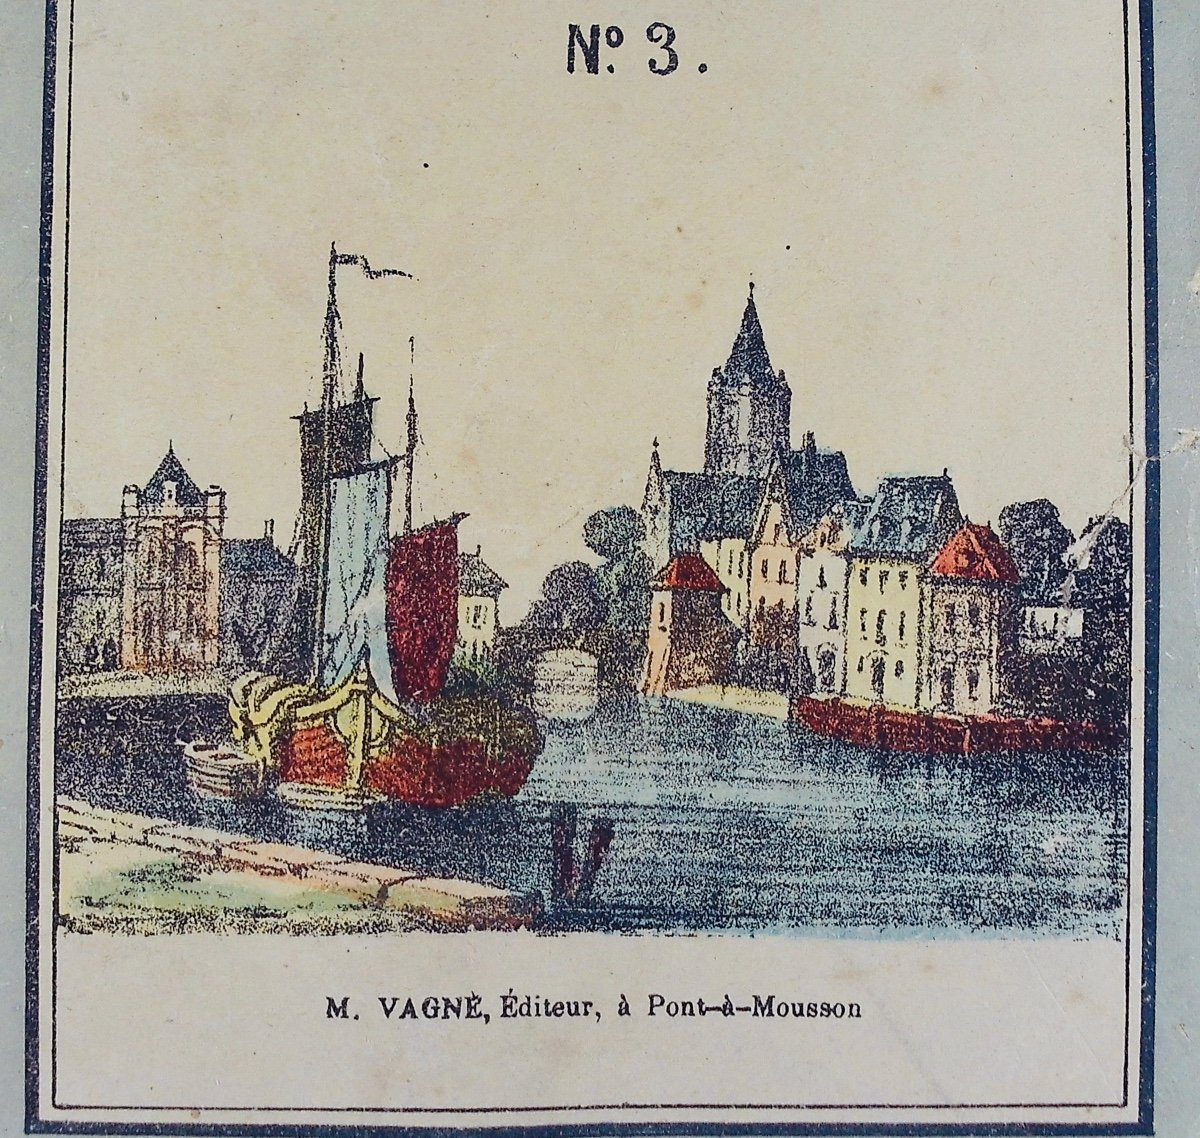 FAGONDE - Études de dessins et de peintures, n°3. Pont-à-Mousson, M. Vagné, vers 1840, broché.-photo-8